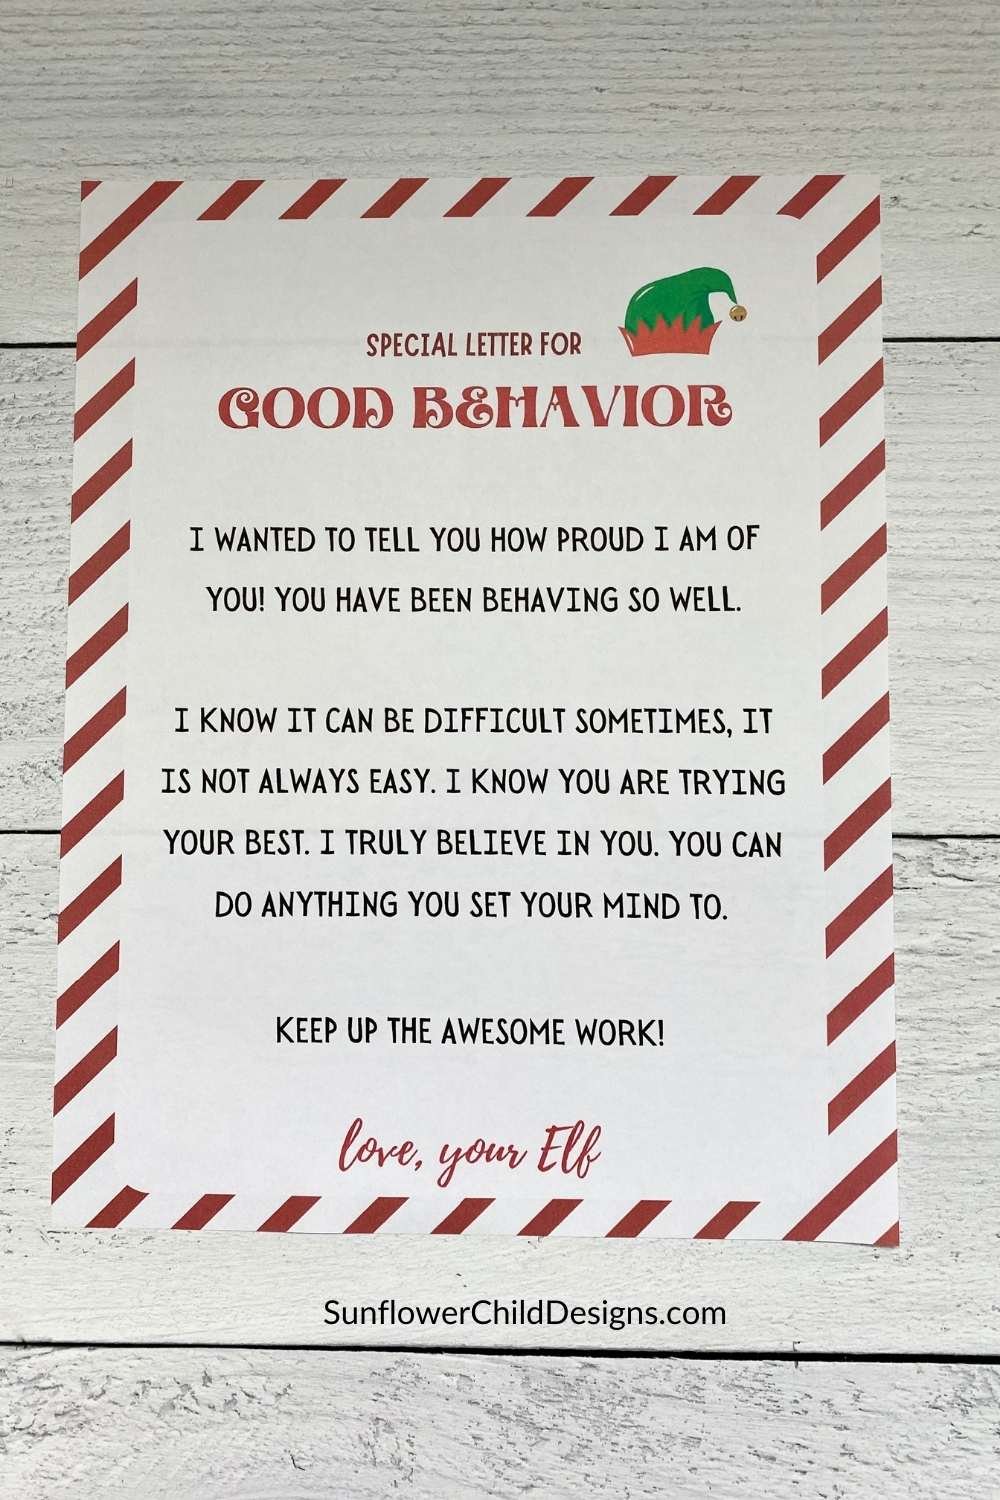 Good behavior letter